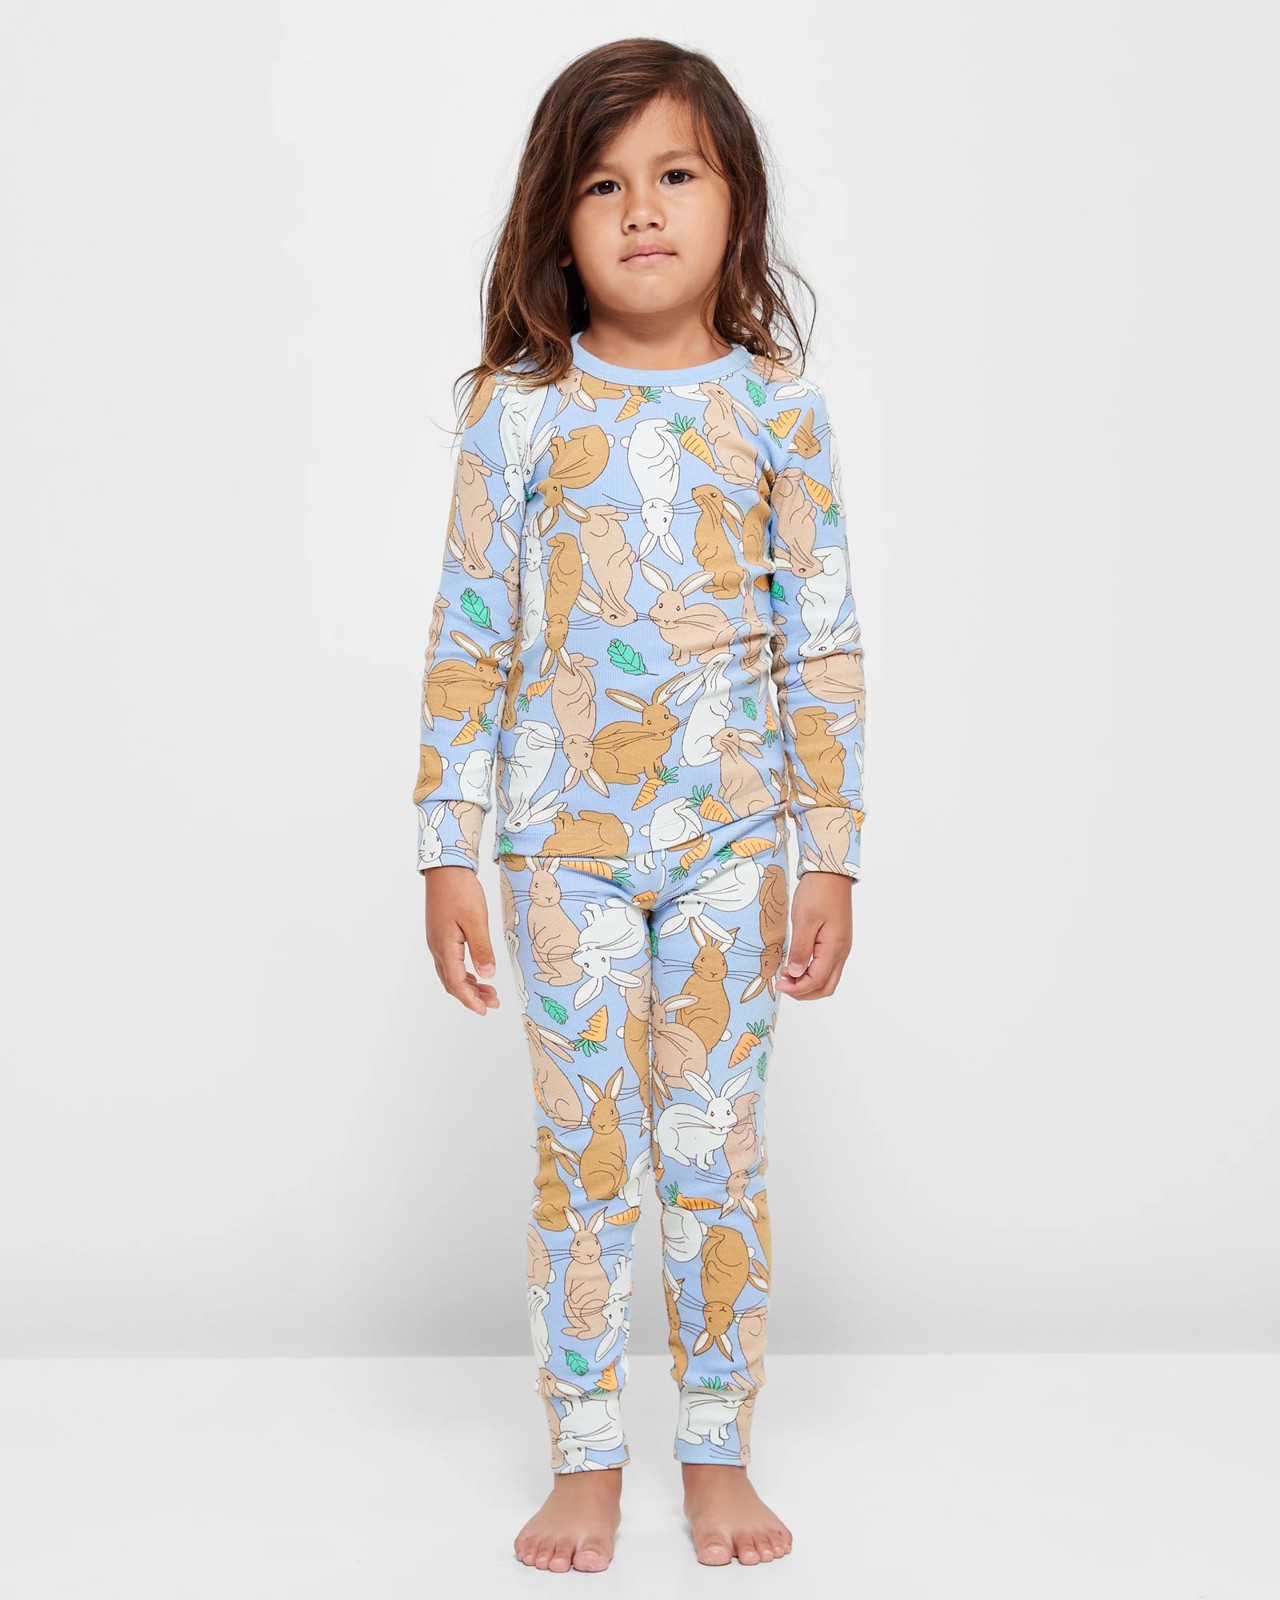 Easter Bunny Print Matching Family Pajama Set